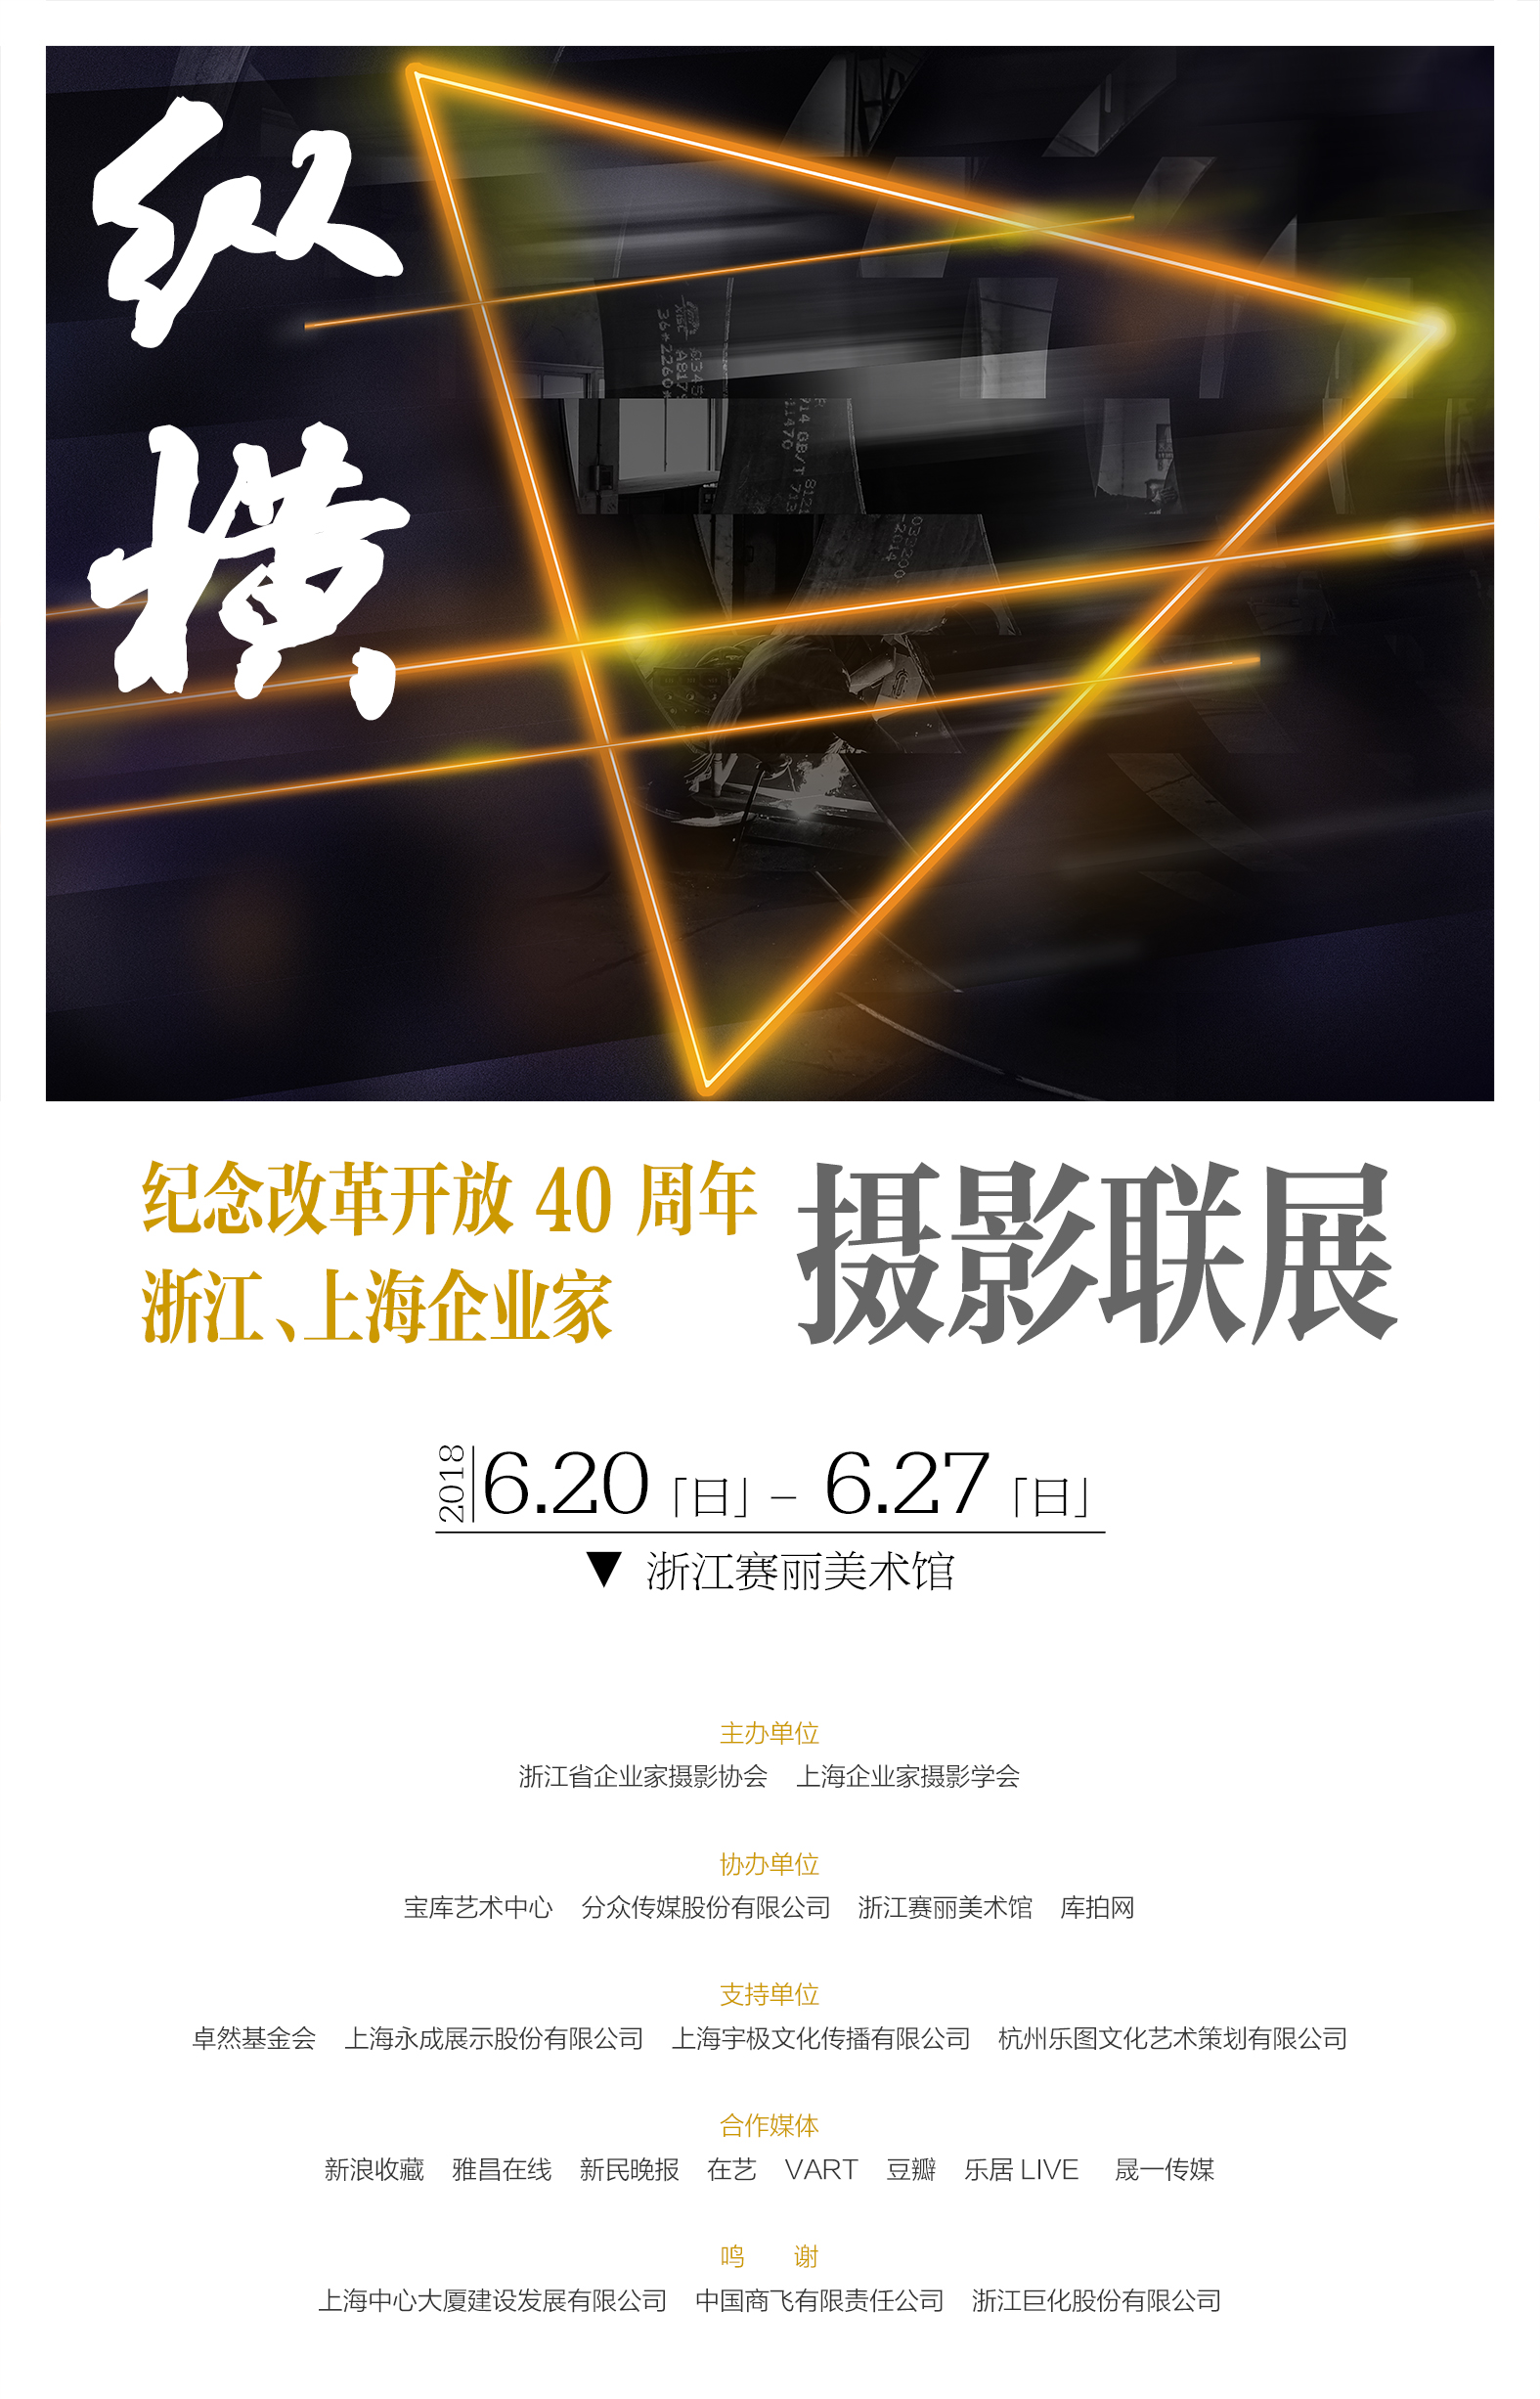 纵横 — 纪念改革开放40周年上海、浙江企业家摄影联展